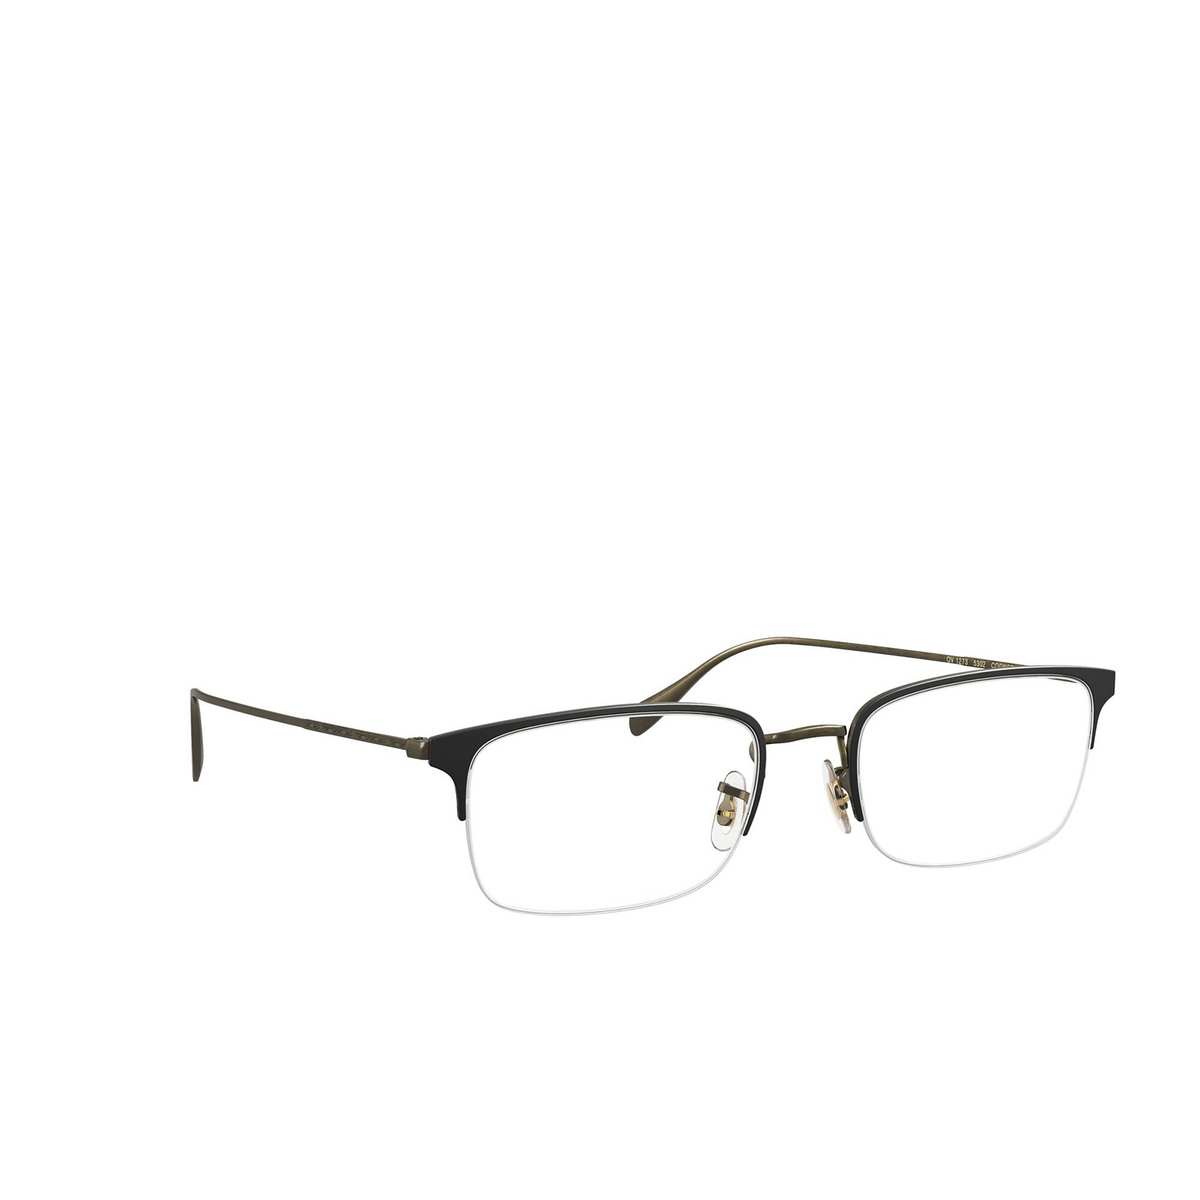 Oliver Peoples® Rectangle Eyeglasses: Codner OV1273 color Matte Black / Antique Gold 5302 - three-quarters view.